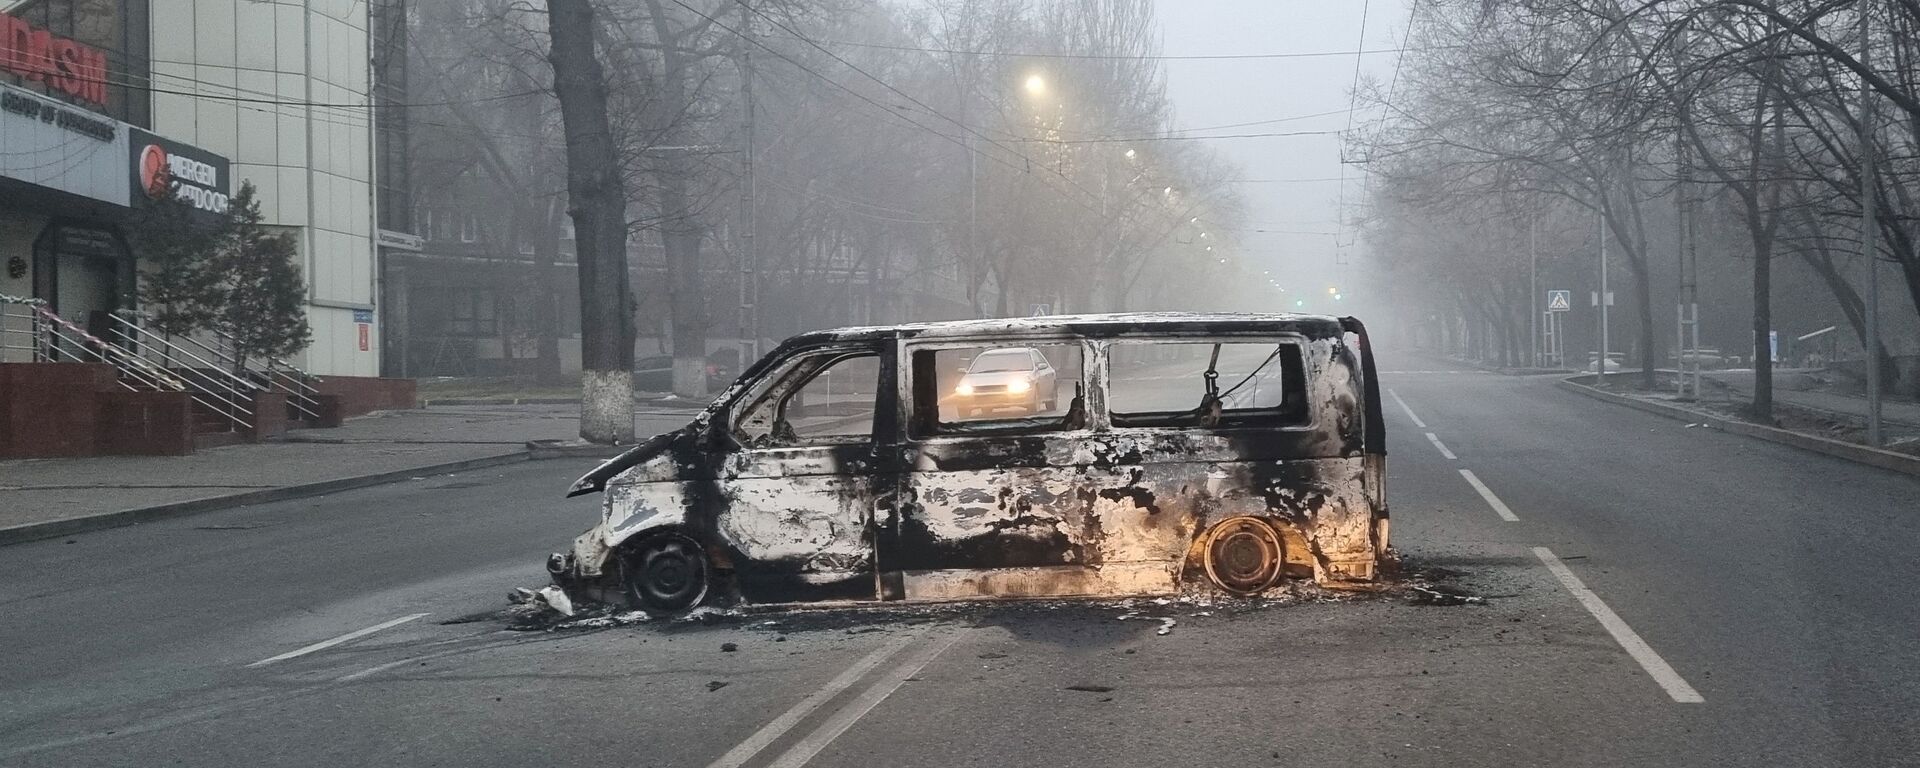 Автомобиль, сожженный во время протестов, вызванных повышением цен на топливо, на дороге в Алматы - Sputnik Таджикистан, 1920, 09.01.2022